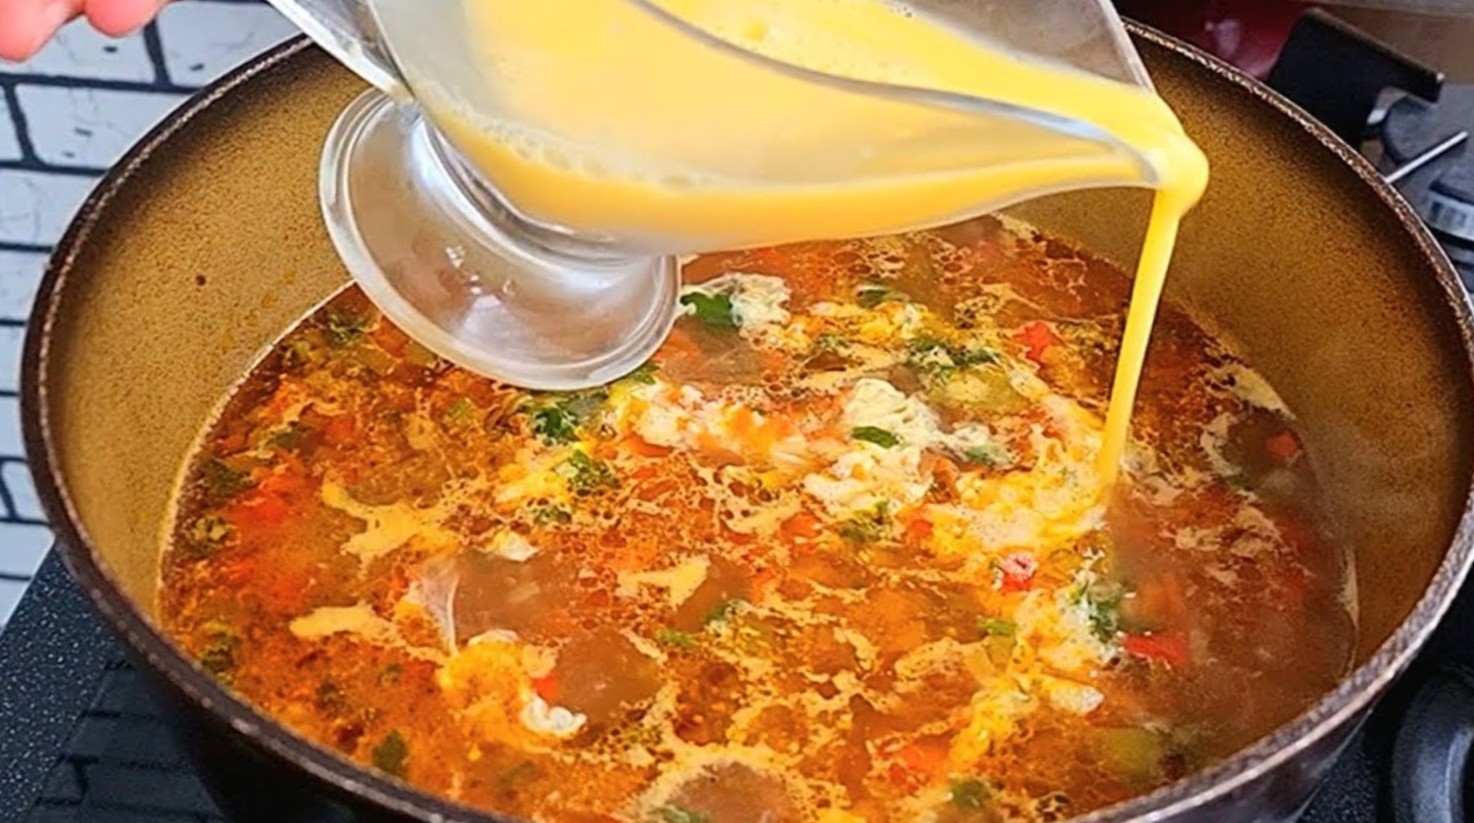 Vrem să oferim o rețetă de supă de pui cu turmeric, ușoară, simplă și rapidă